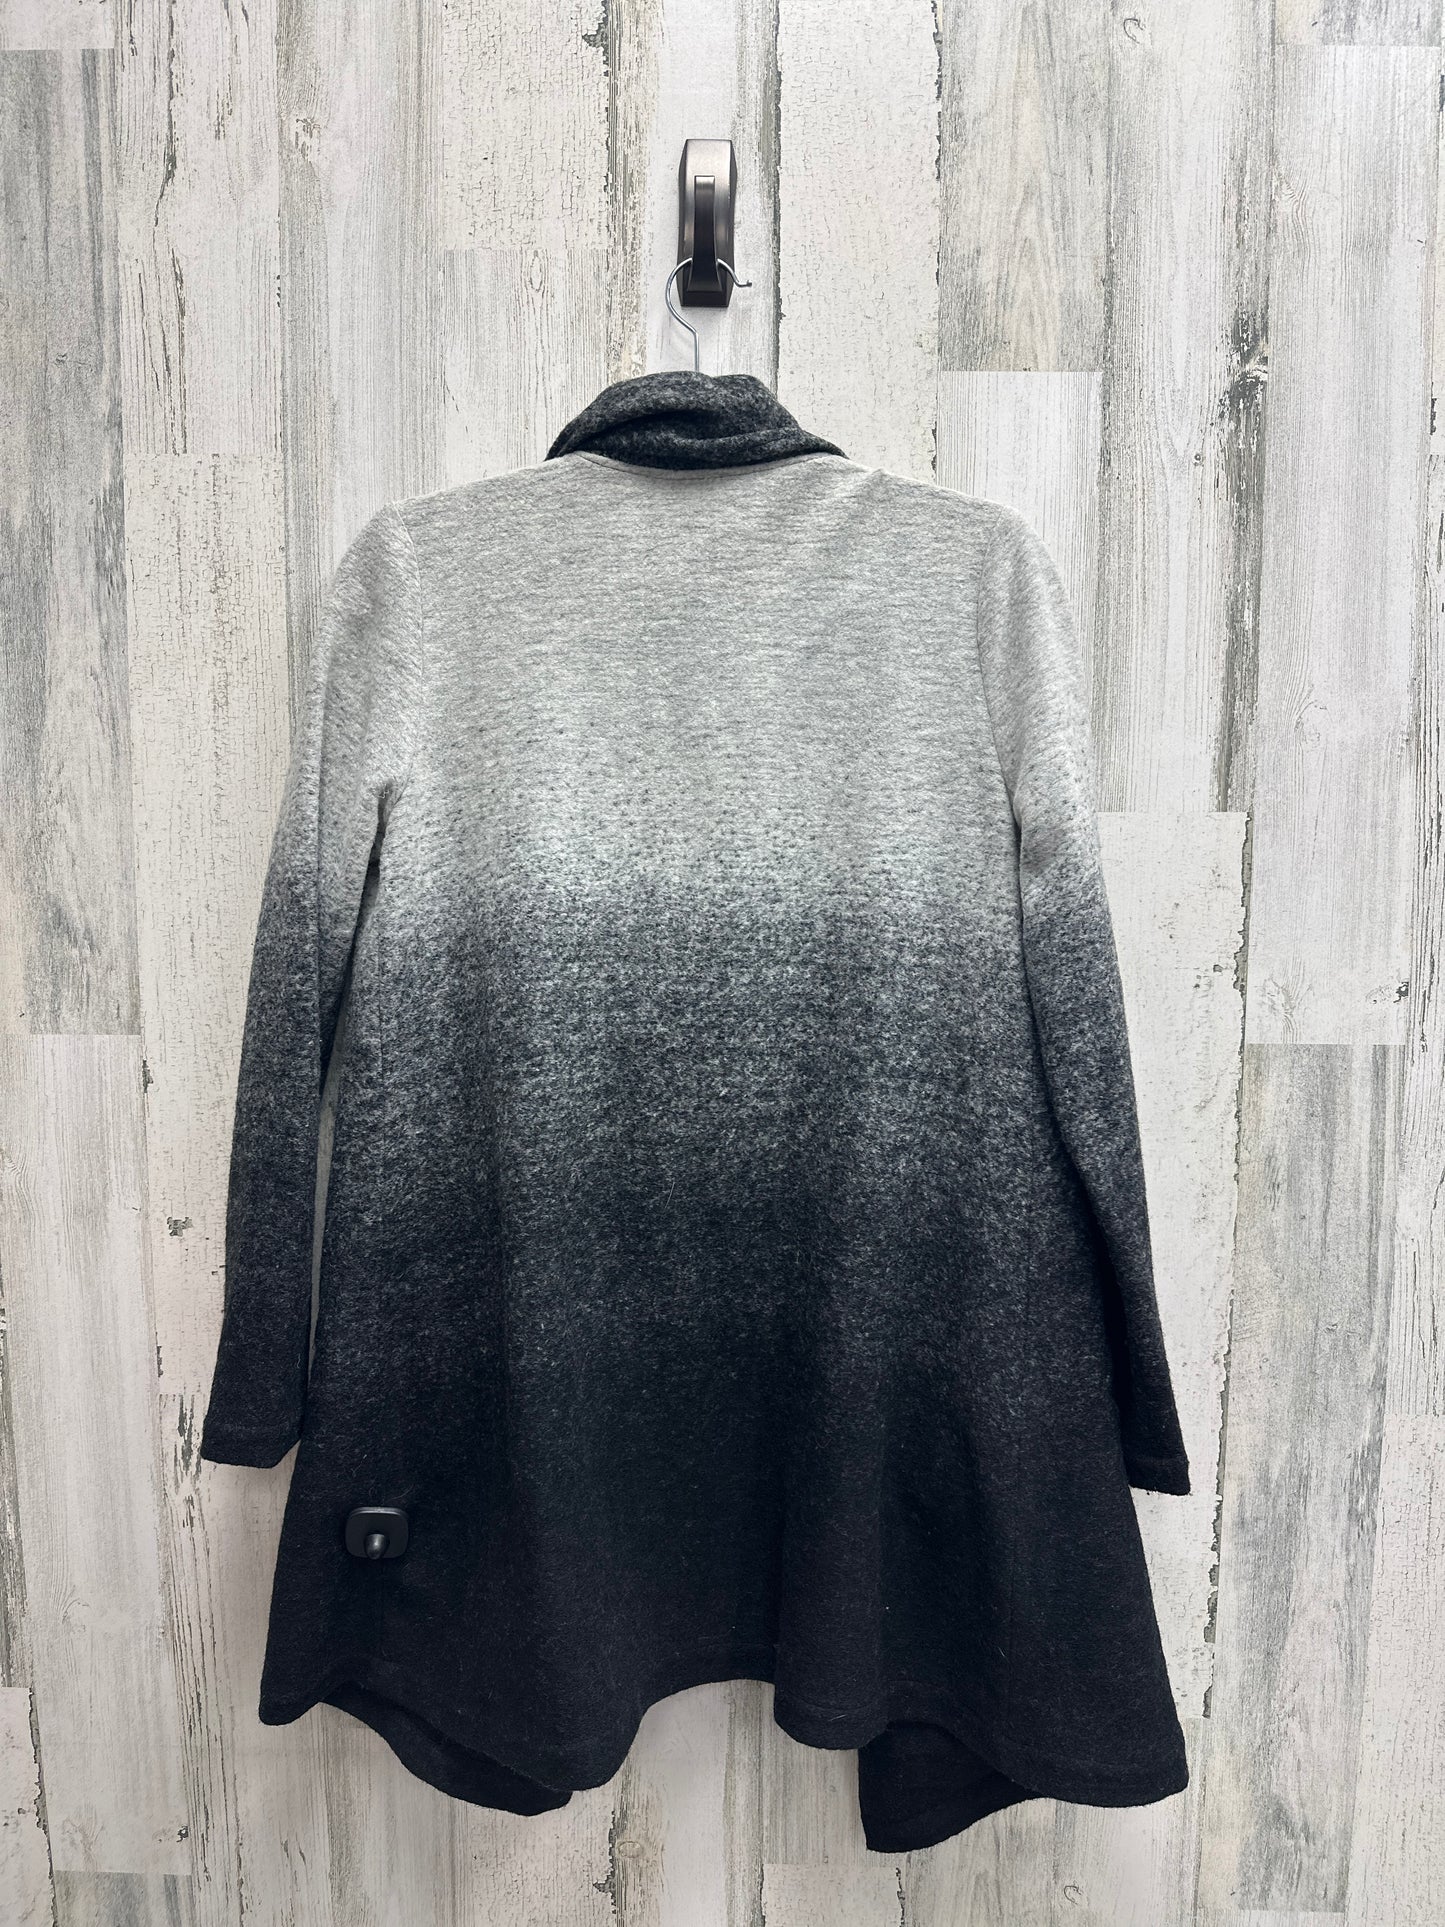 Sweater Cardigan By Bb Dakota  Size: Xs